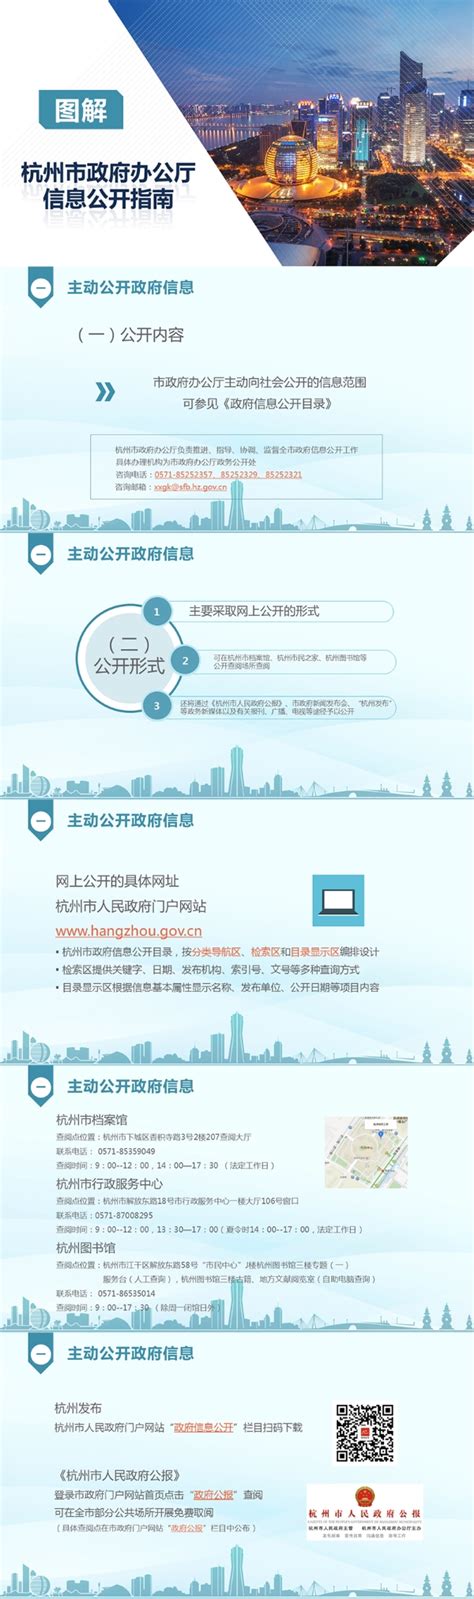 杭州市统计局2018年政府信息公开年度报告